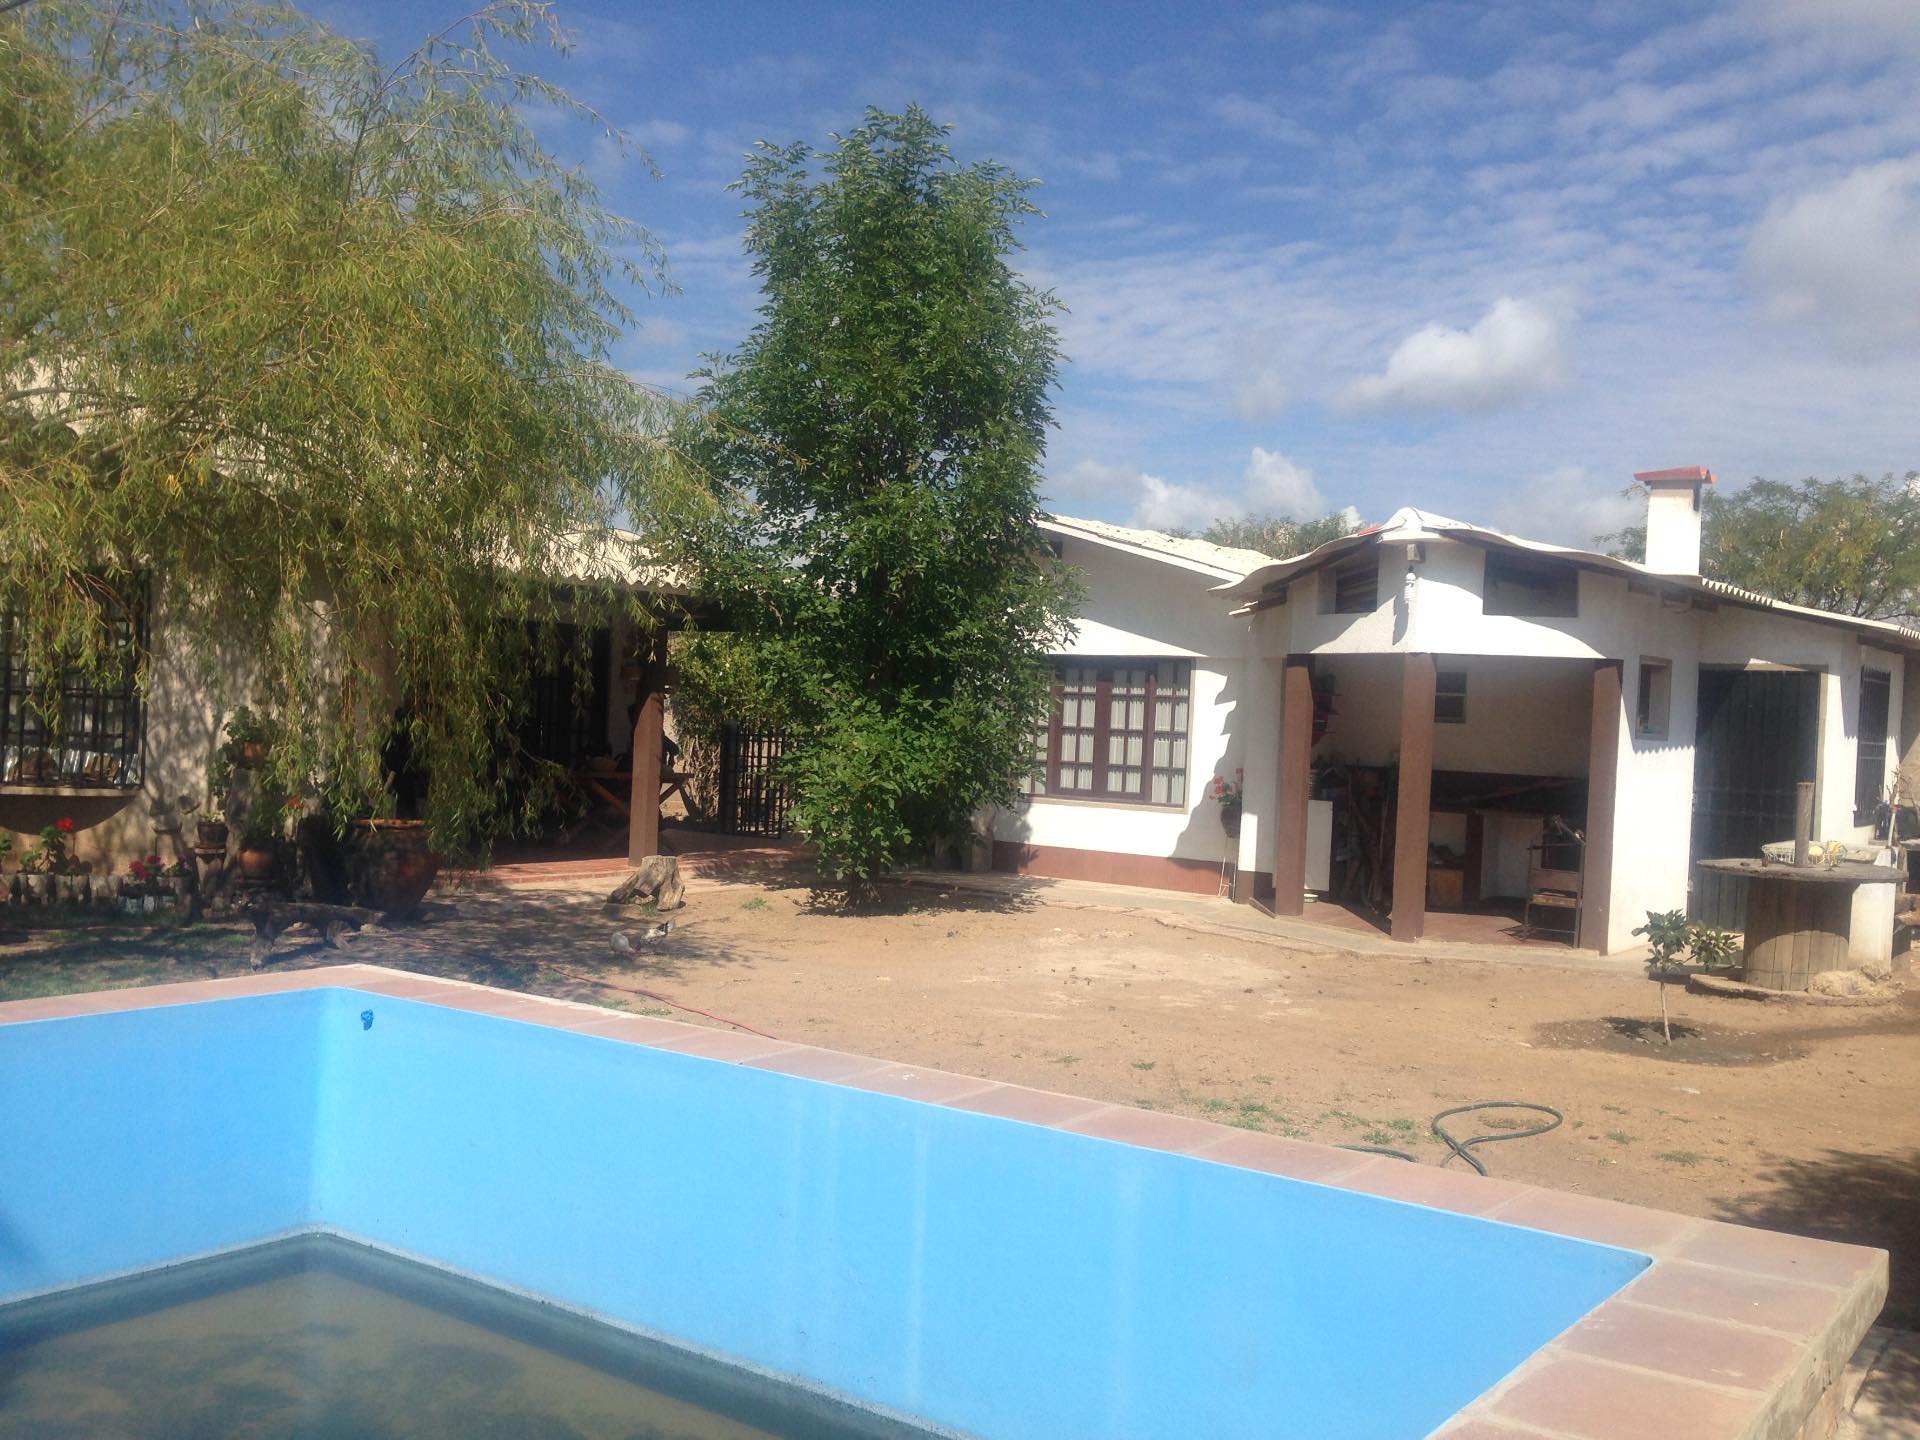 Casa en VentaMolle Mayu a 20 minutos de Sucre camino al aeropuerto de Alcantati del peaje de Cochis 2 km. A la derecha hacia Totacoa  2 baños 5 parqueos Foto 16